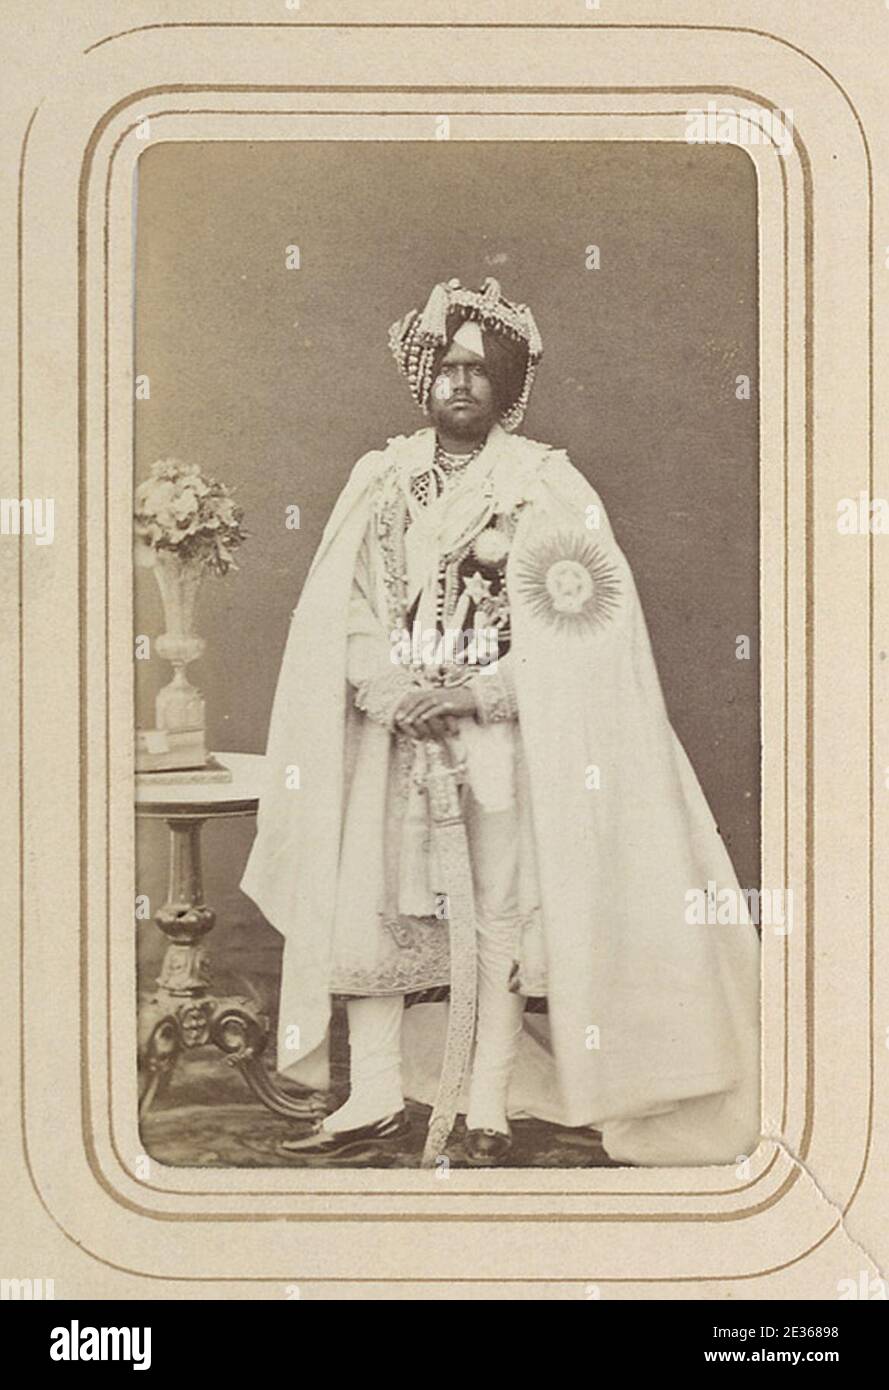 Mahendra Singh, Maharaja of Patiala in the 1870s. Stock Photo